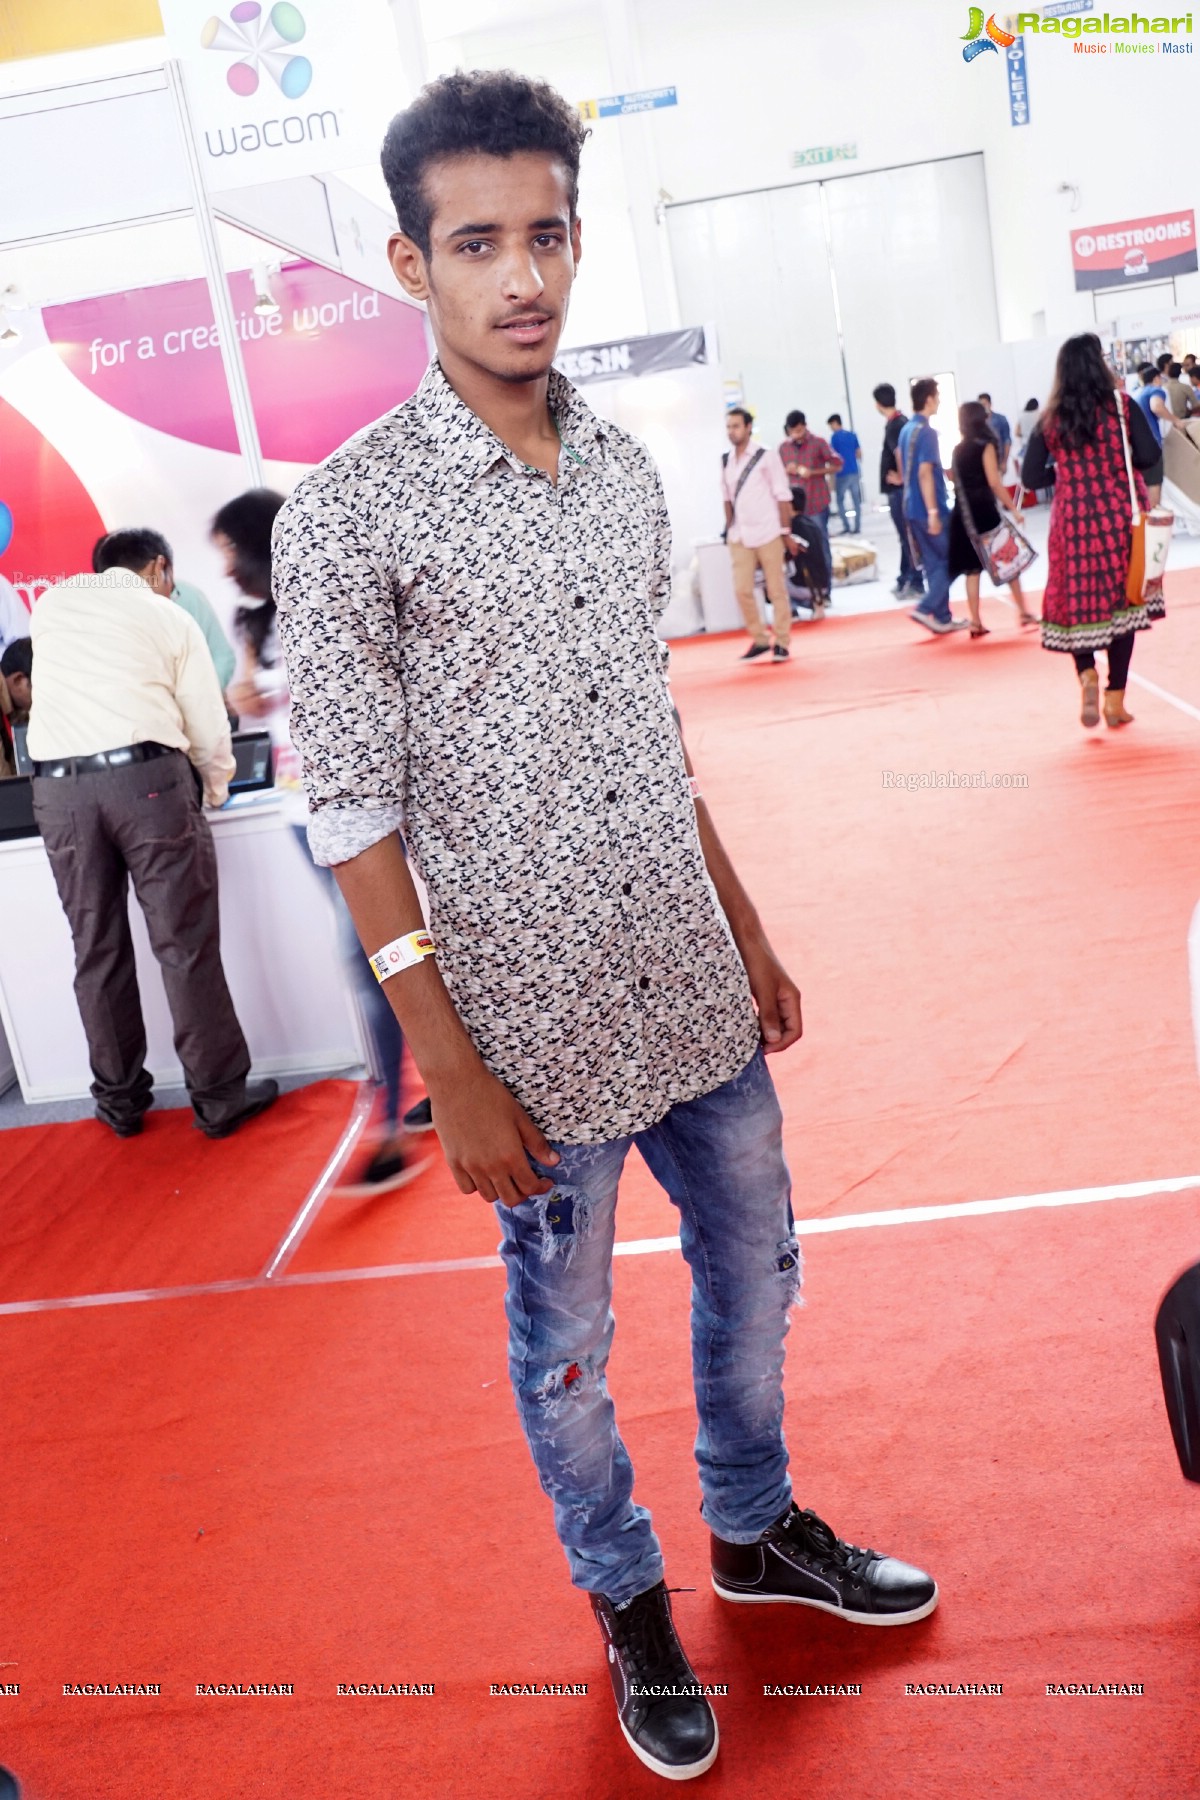 Hyderabad Comic Con 2015